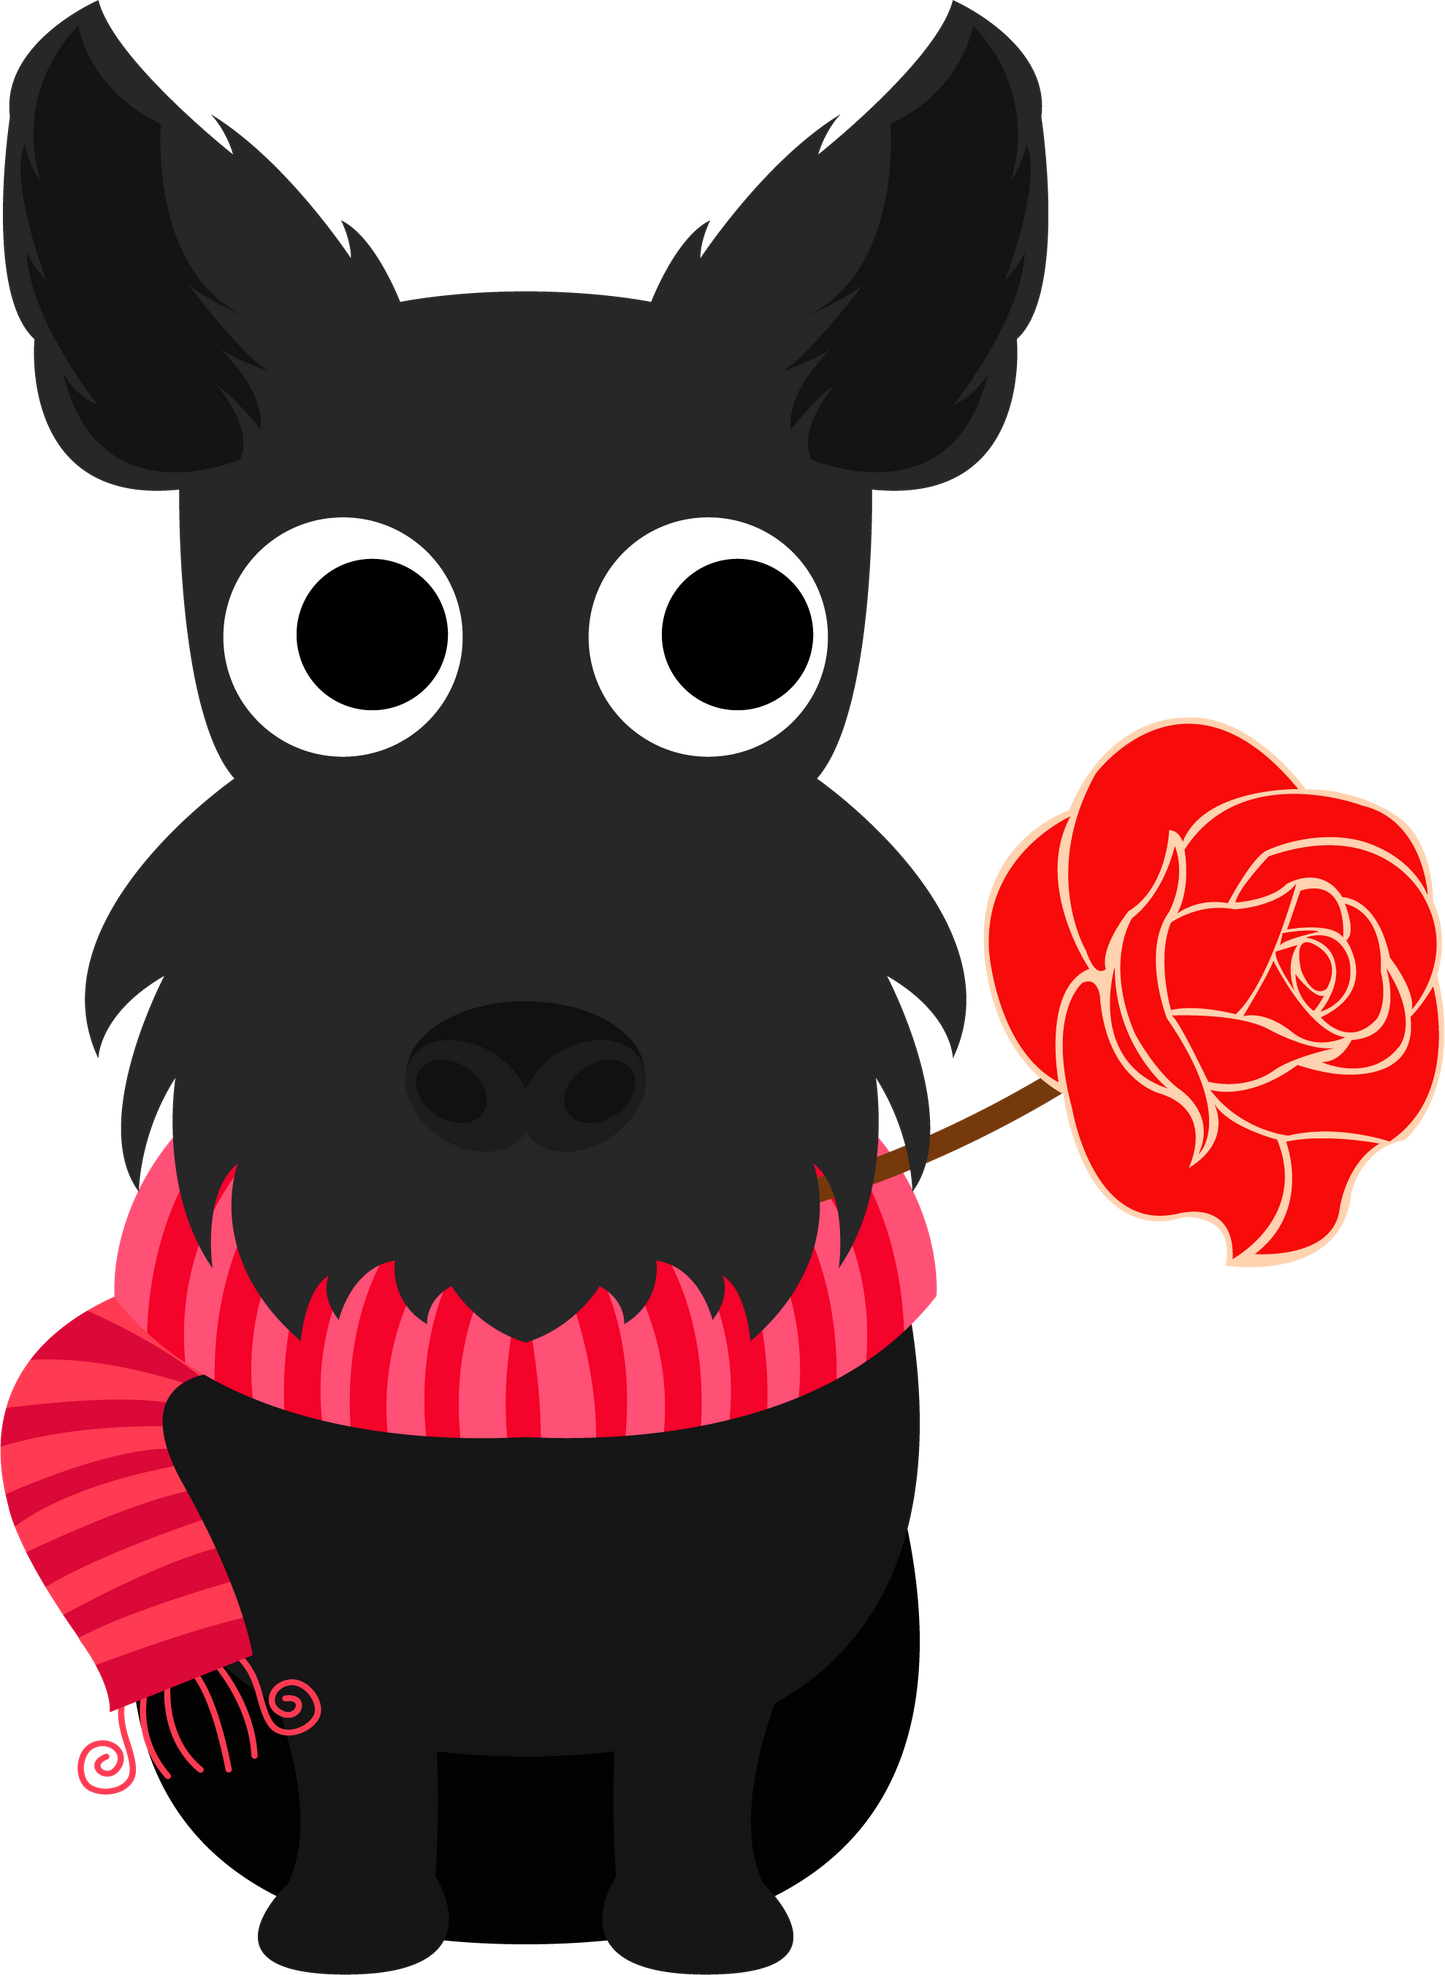 Black Scottie dog Valentine’s Day cookie cutter